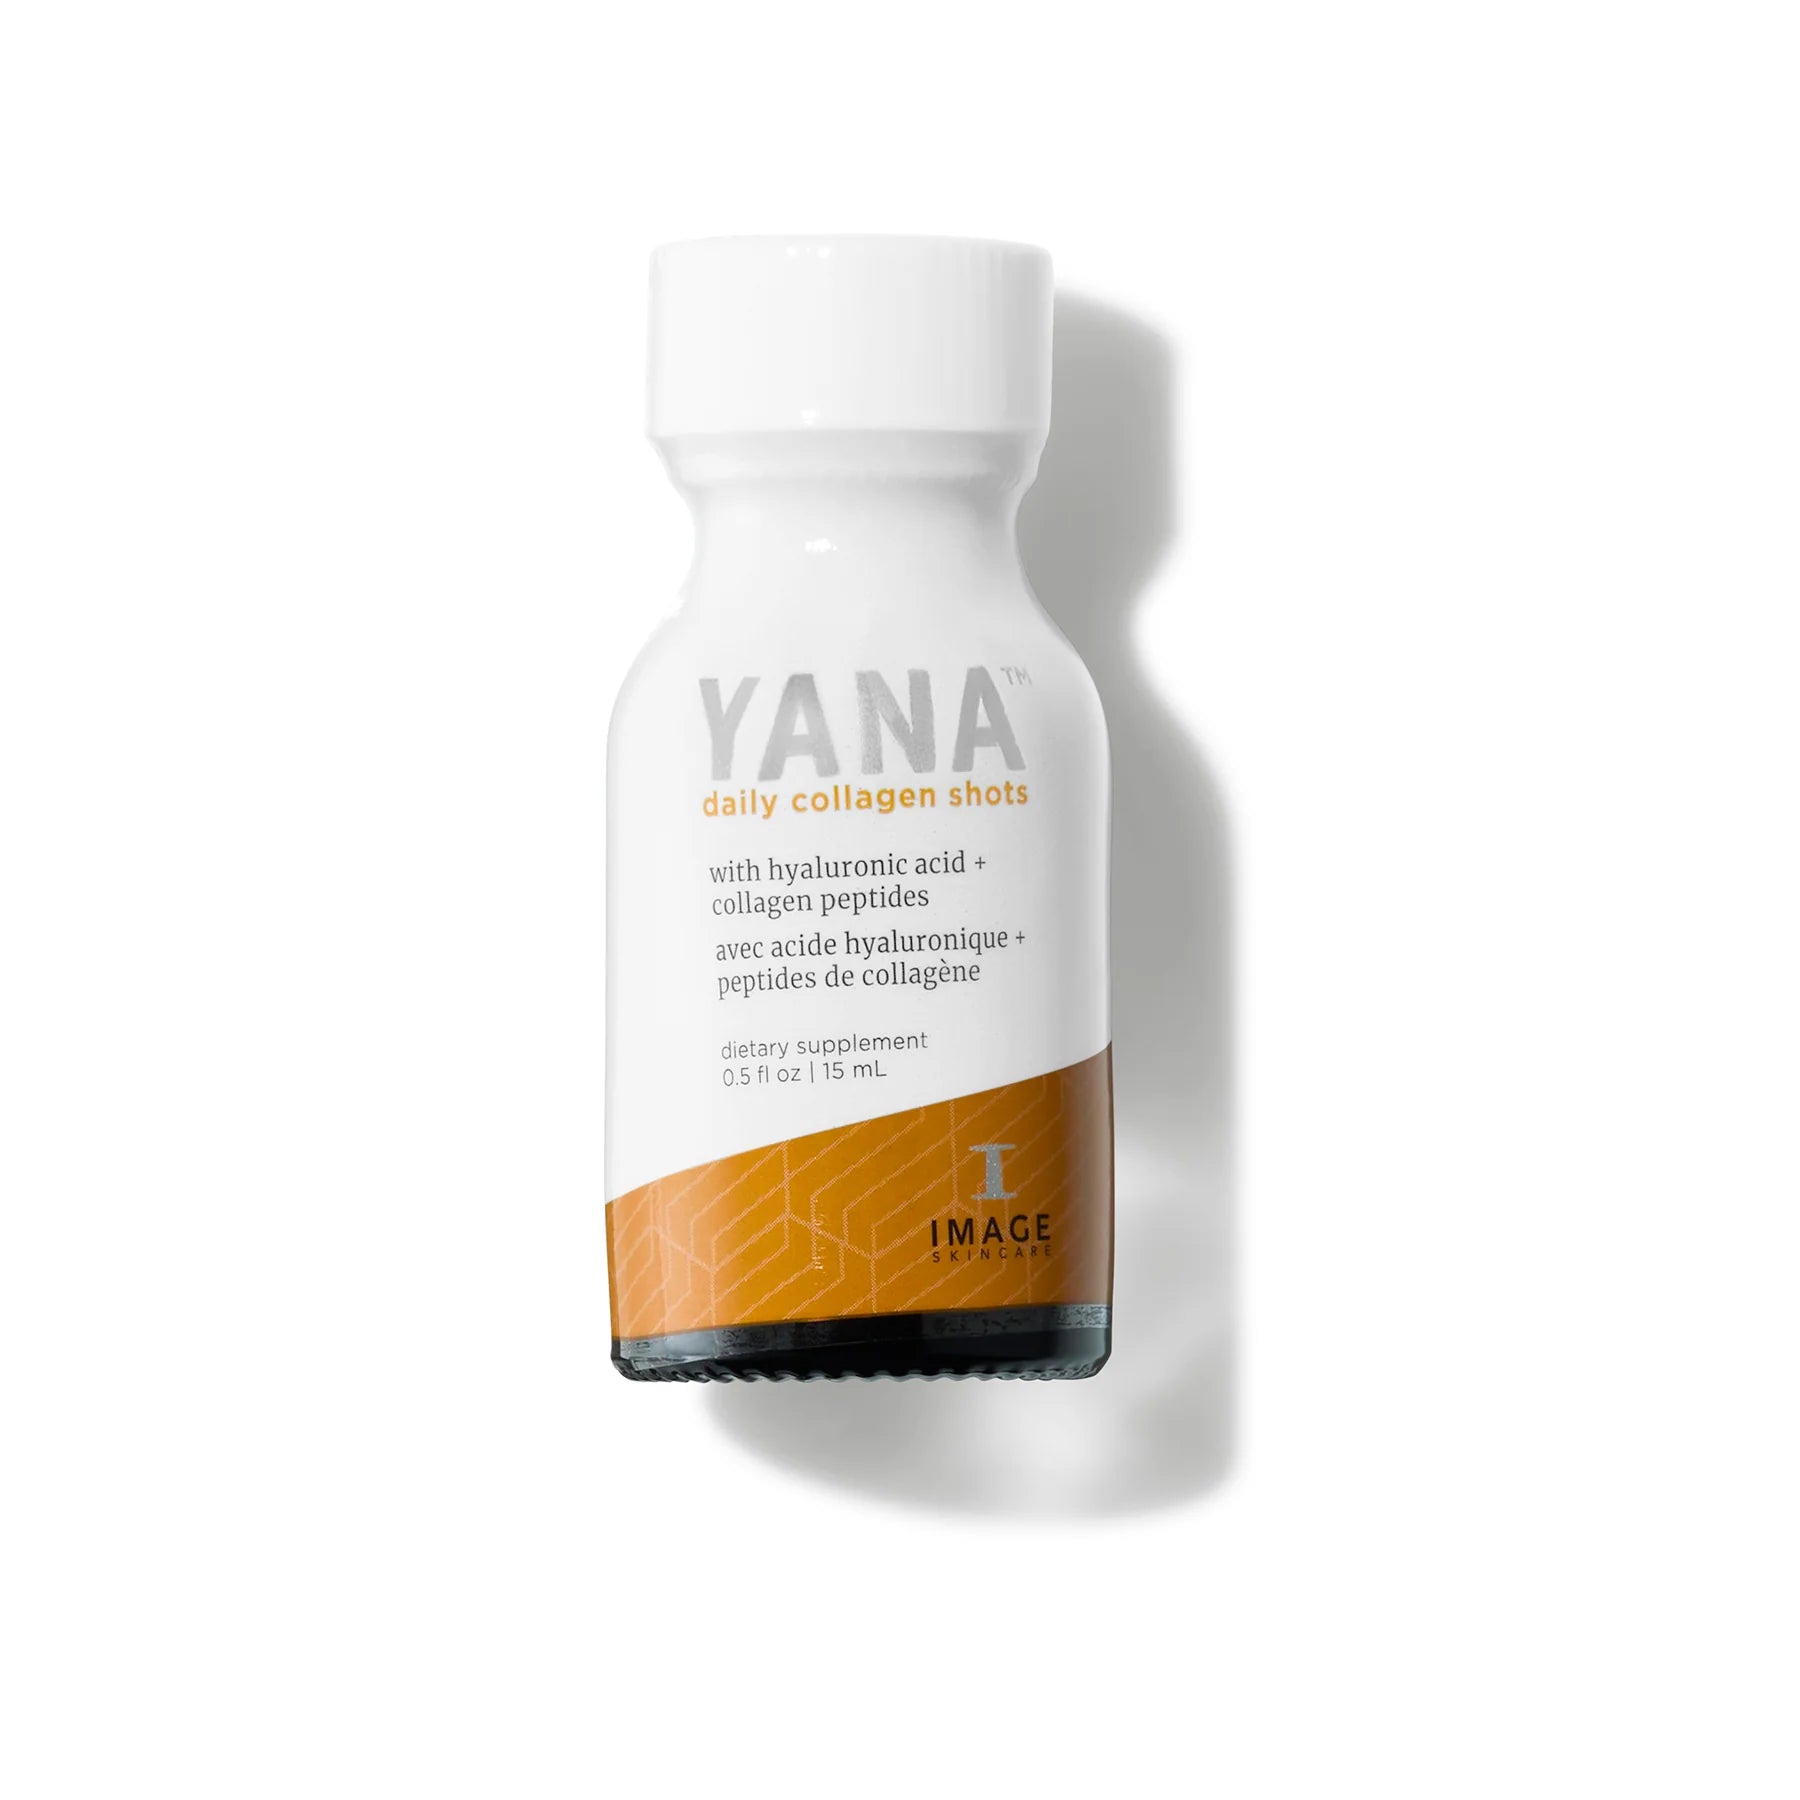 YANA™ daily collagen shots (28 days)